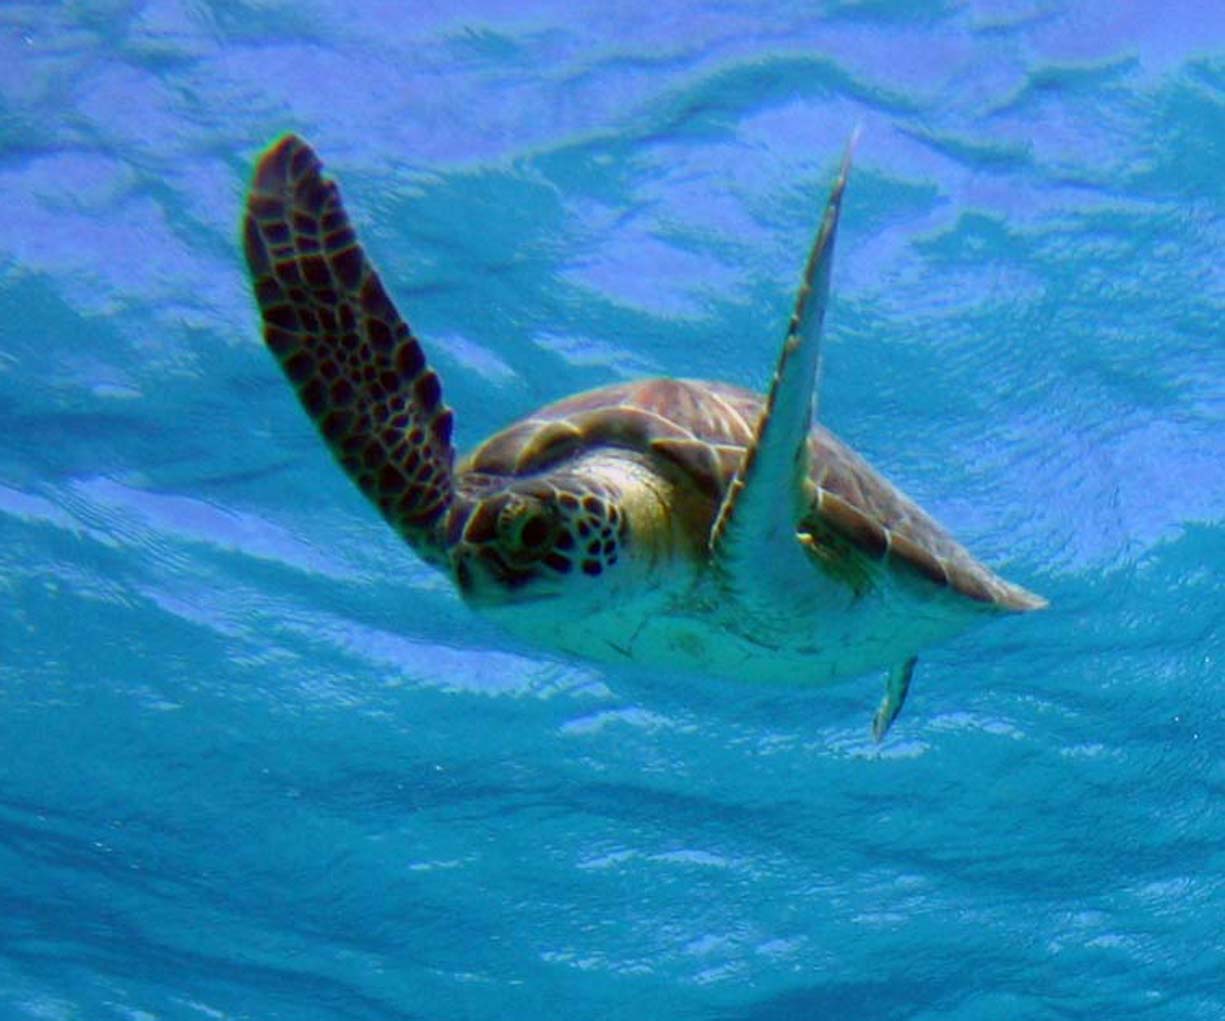 Bonaire07 hawksbill turtle